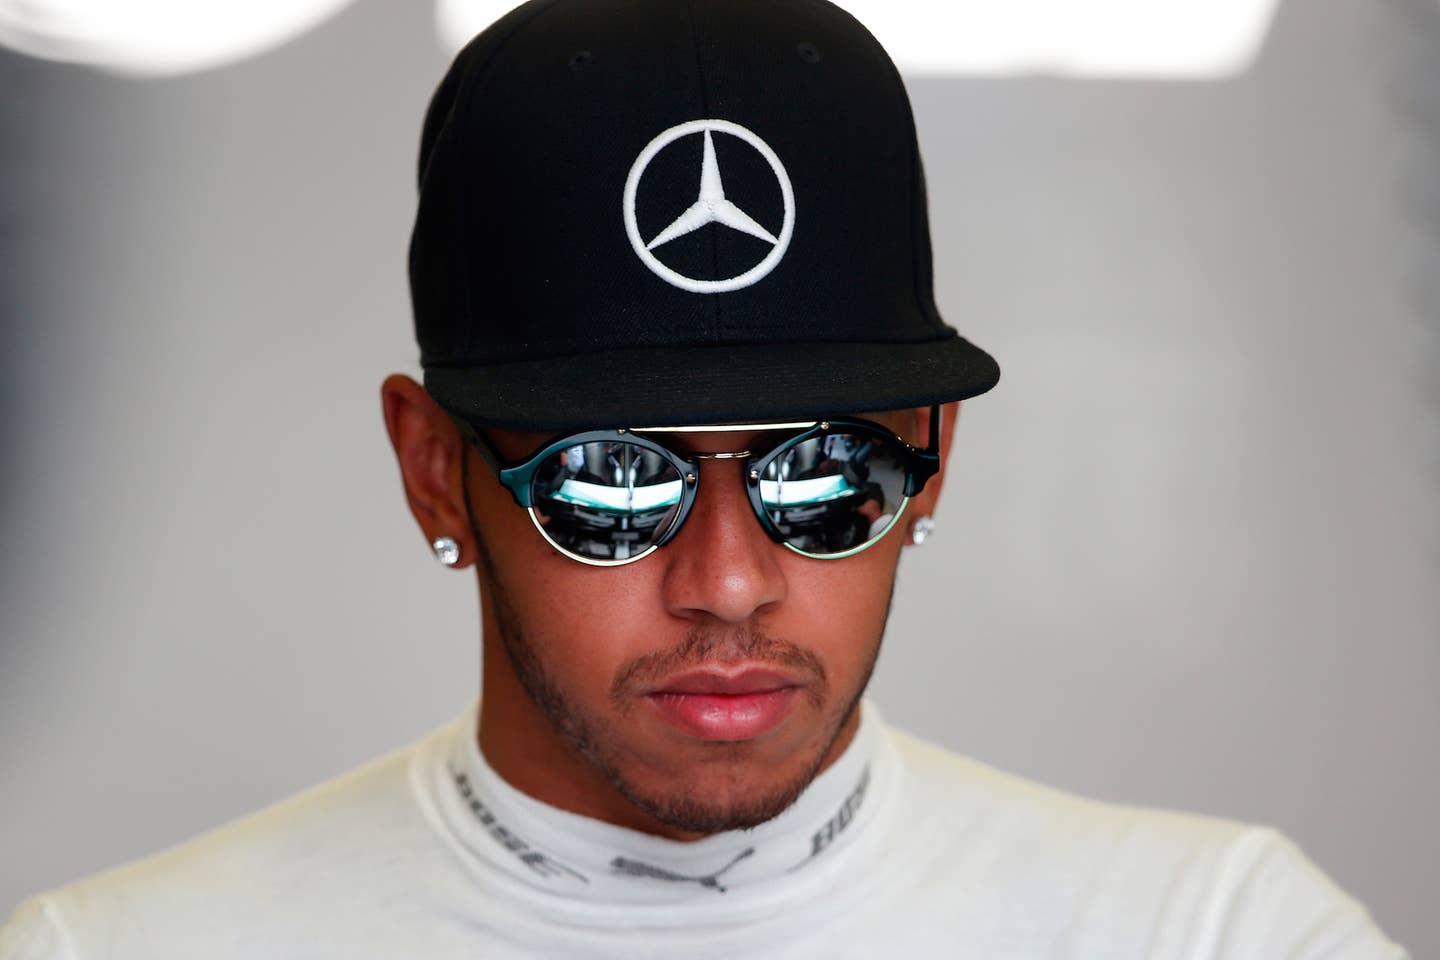 Lewis Hamilton Won’t Be Punished For Impeding Rosberg at Abu Dhabi